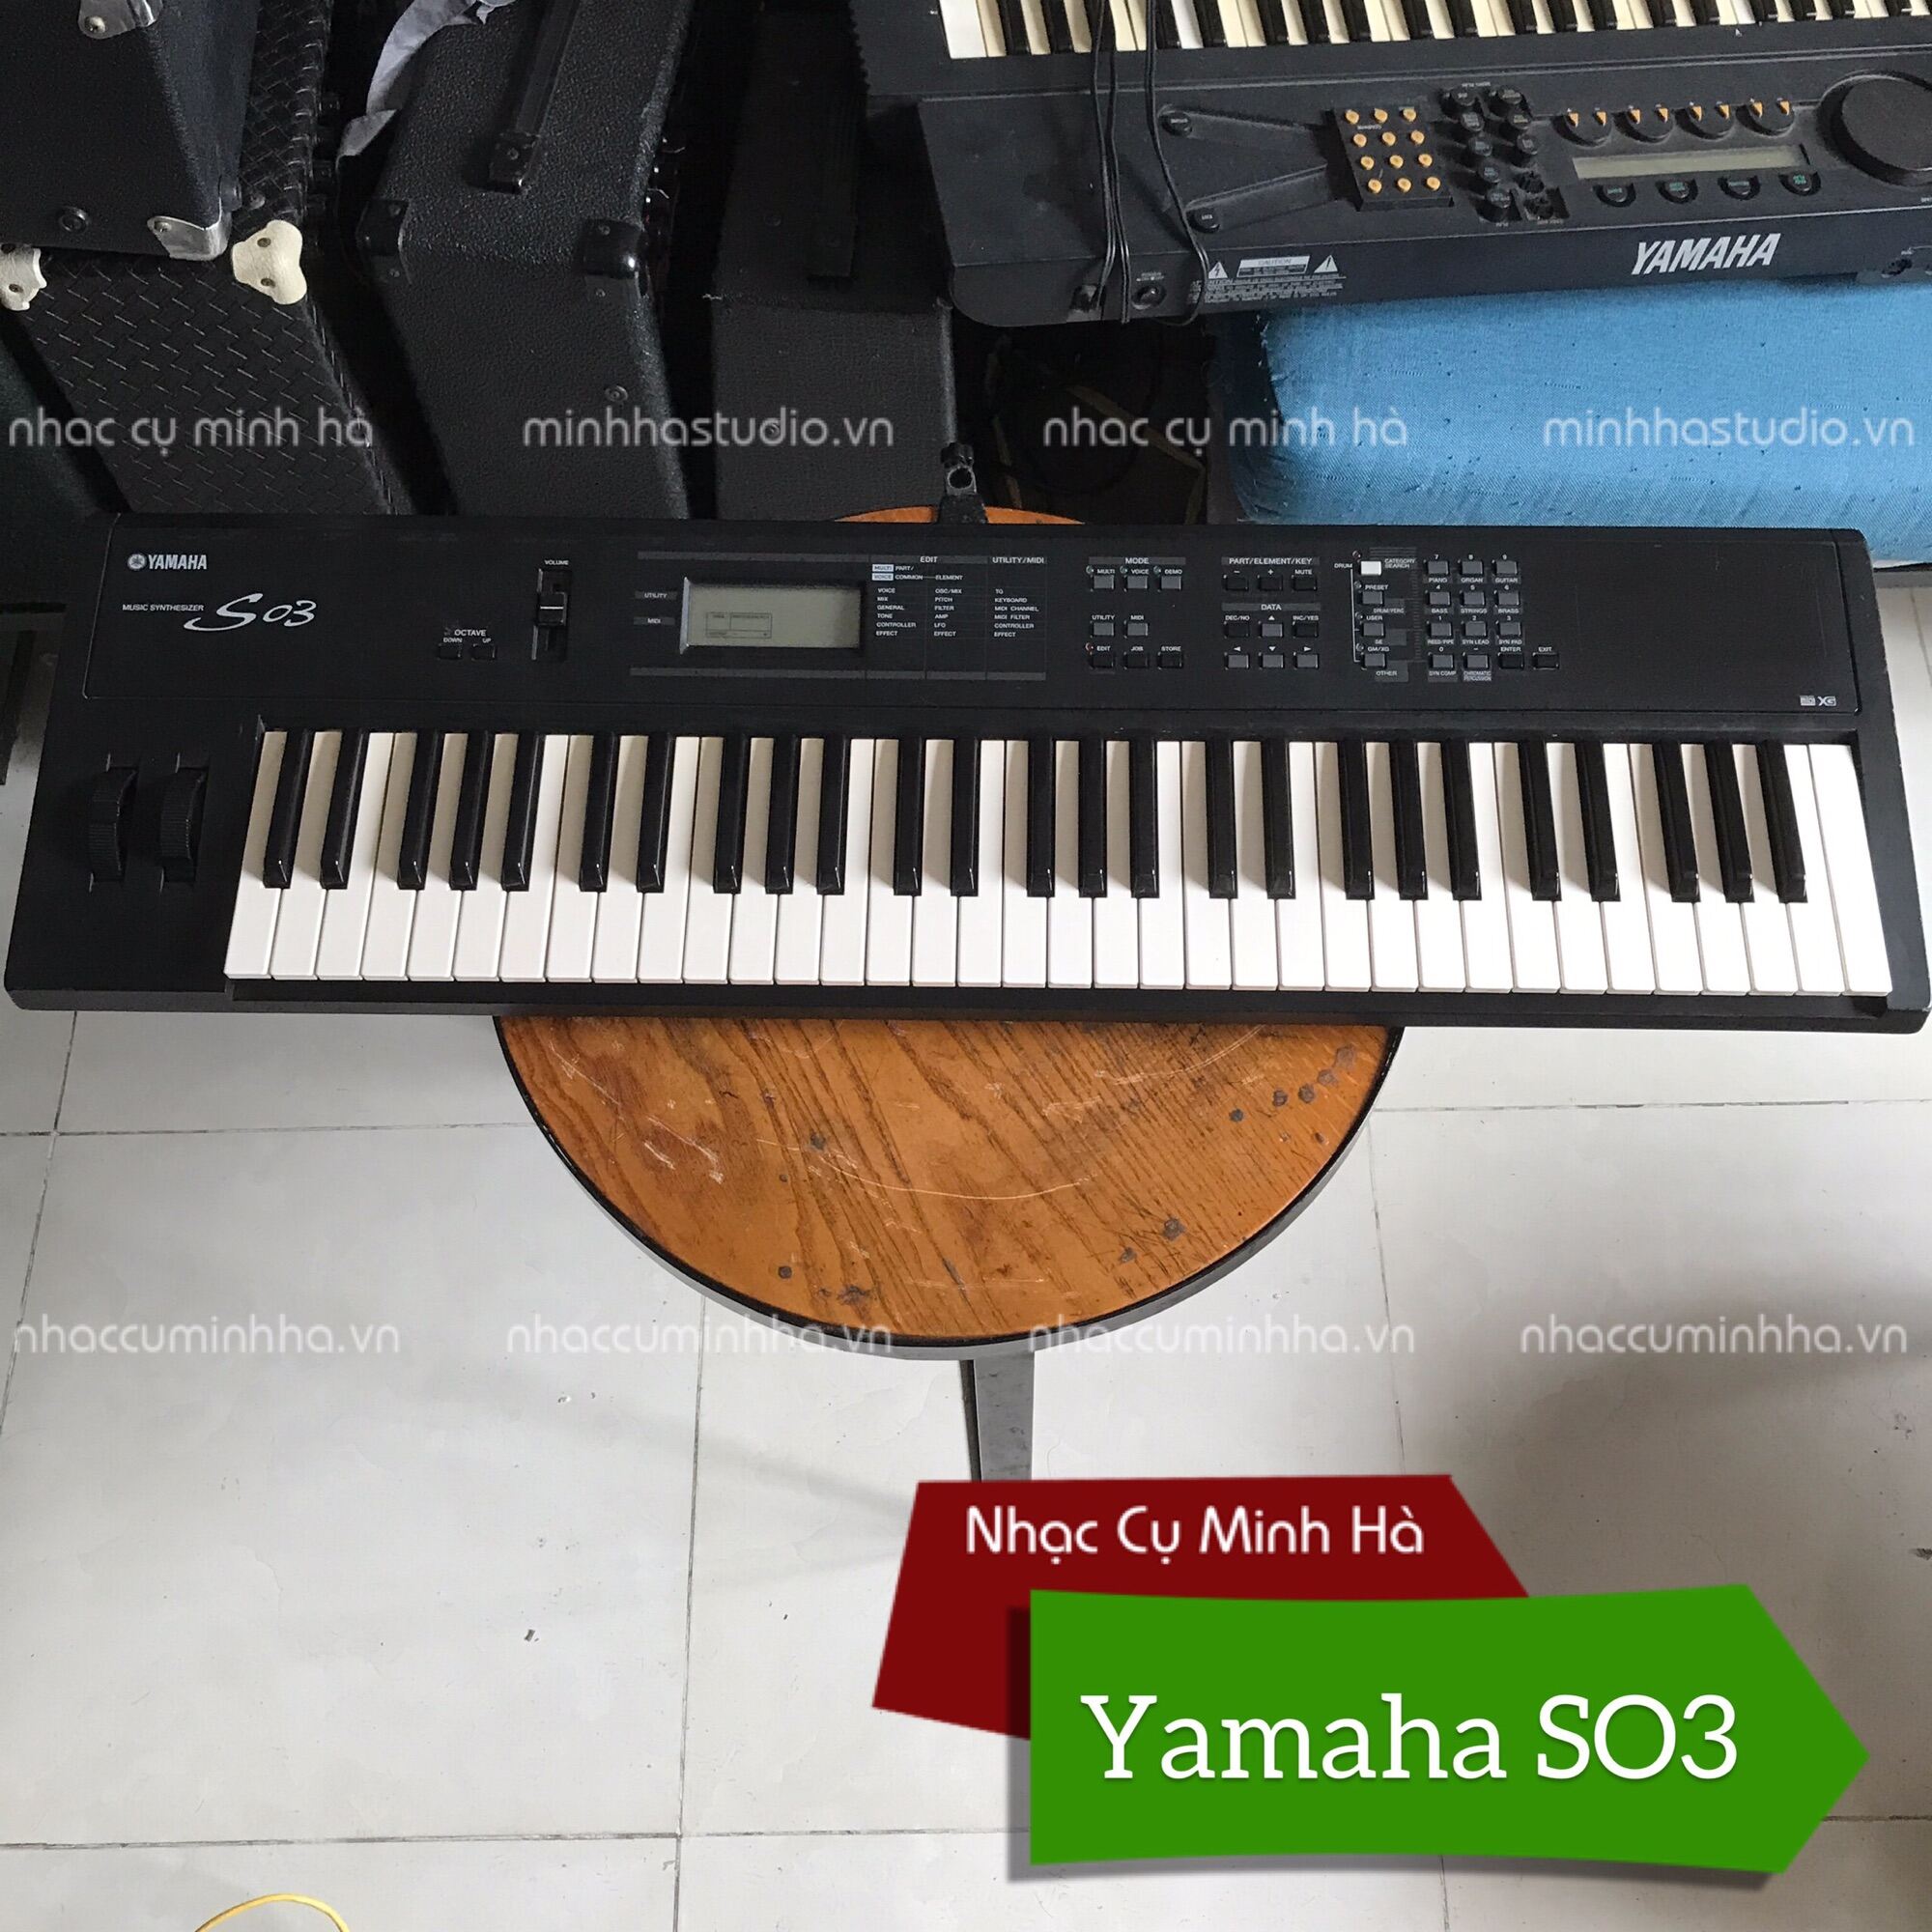 Đàn Keyboard Yamaha SO3 đã qua sử dụng, chơi hoàn hảo